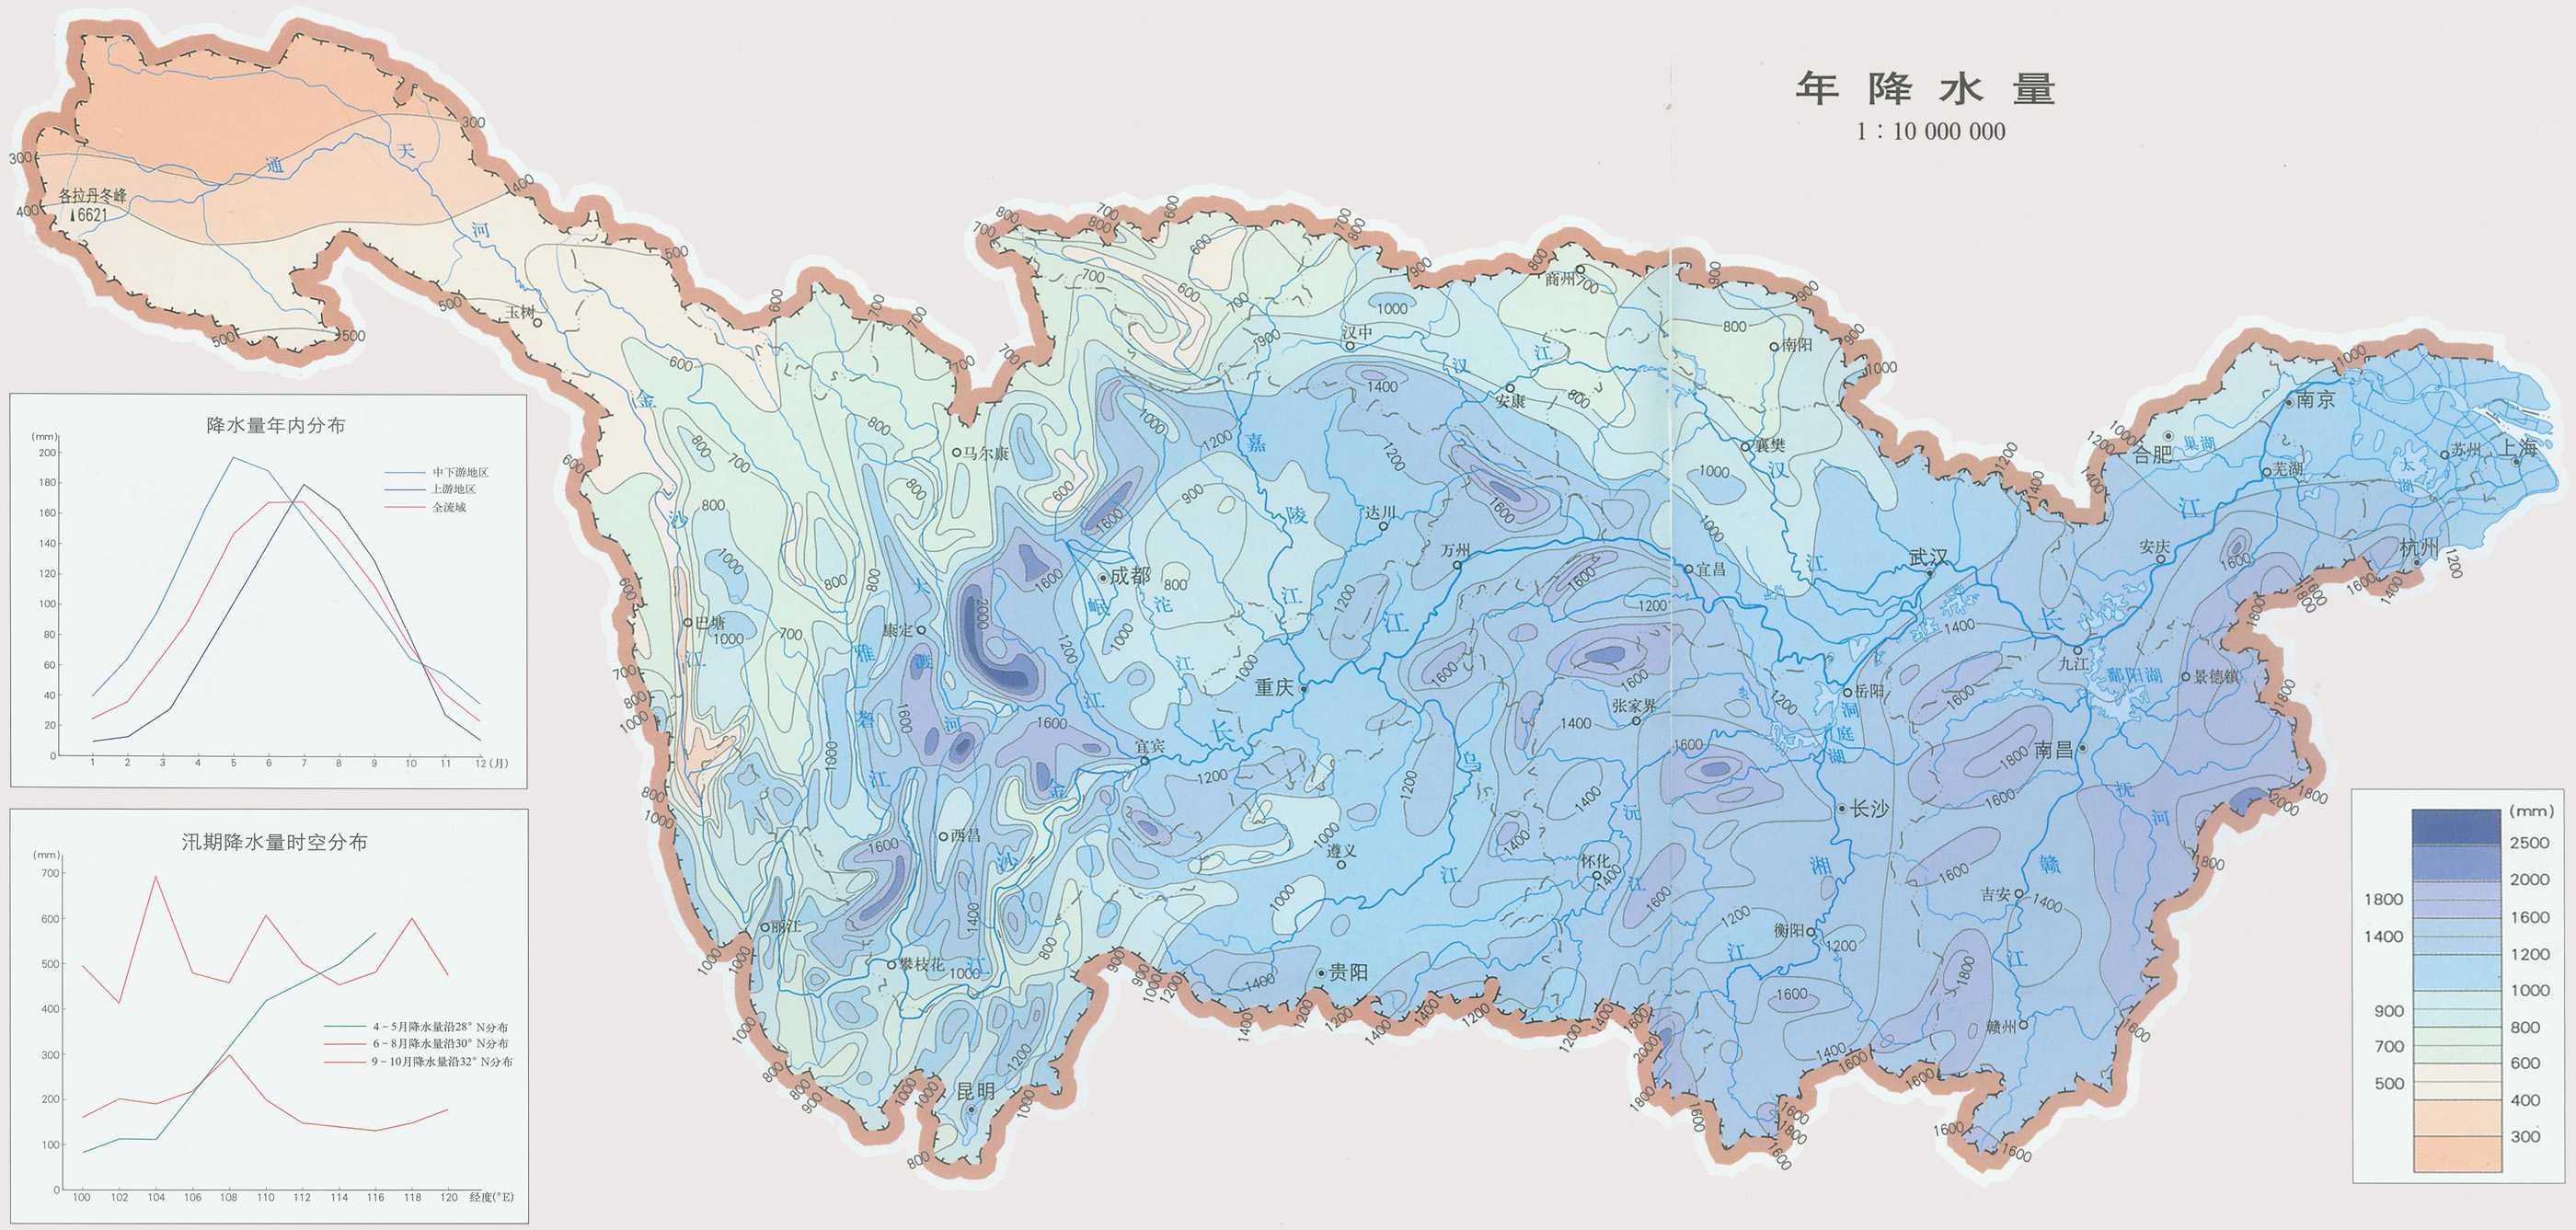 (弱水,额济纳河)现在是一条内陆河,地质历史上这是黑龙江水系的一部分